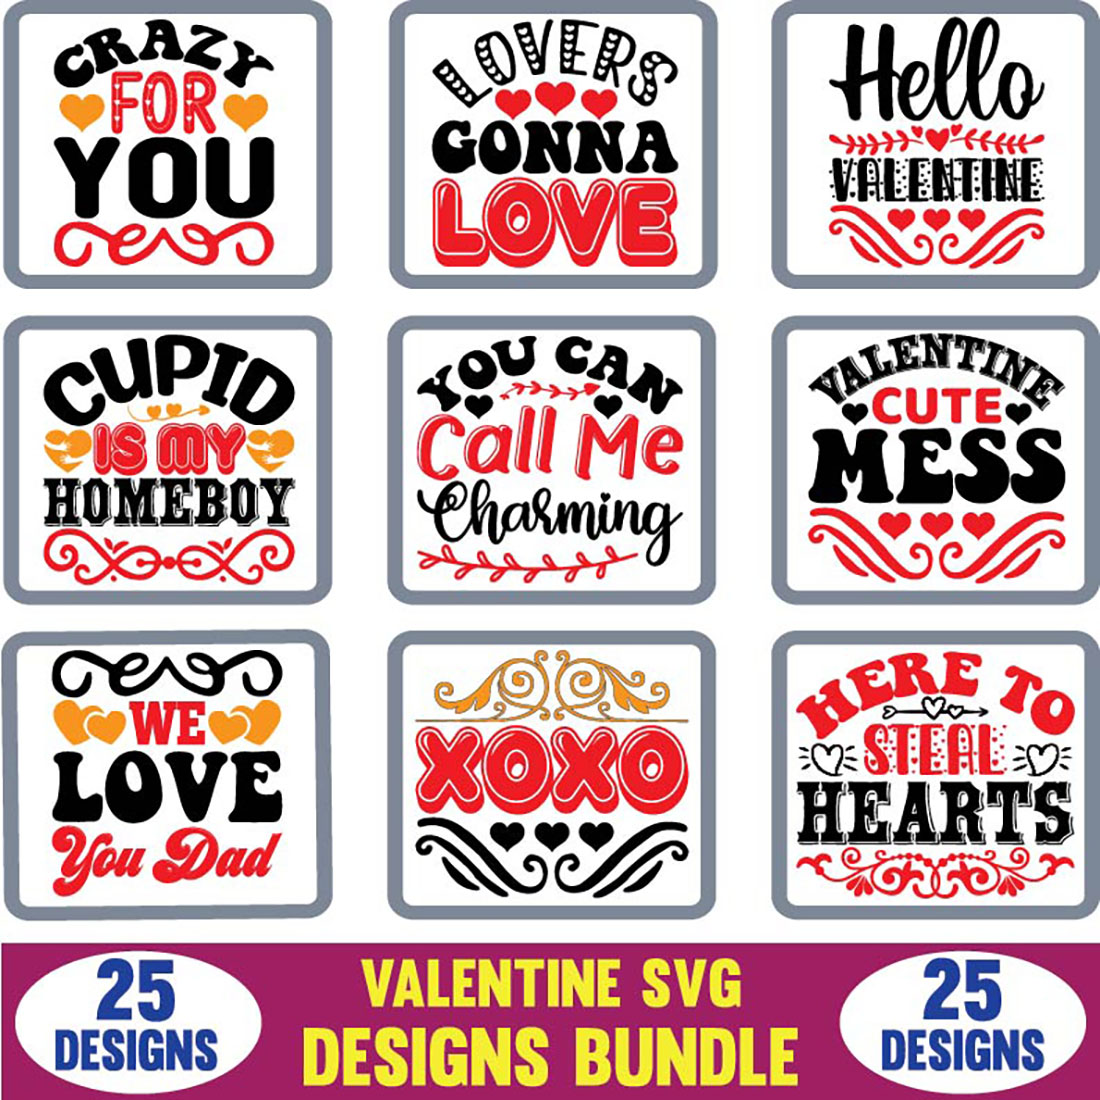 Valentine T-shirt SVG Designs Bundle image cover.